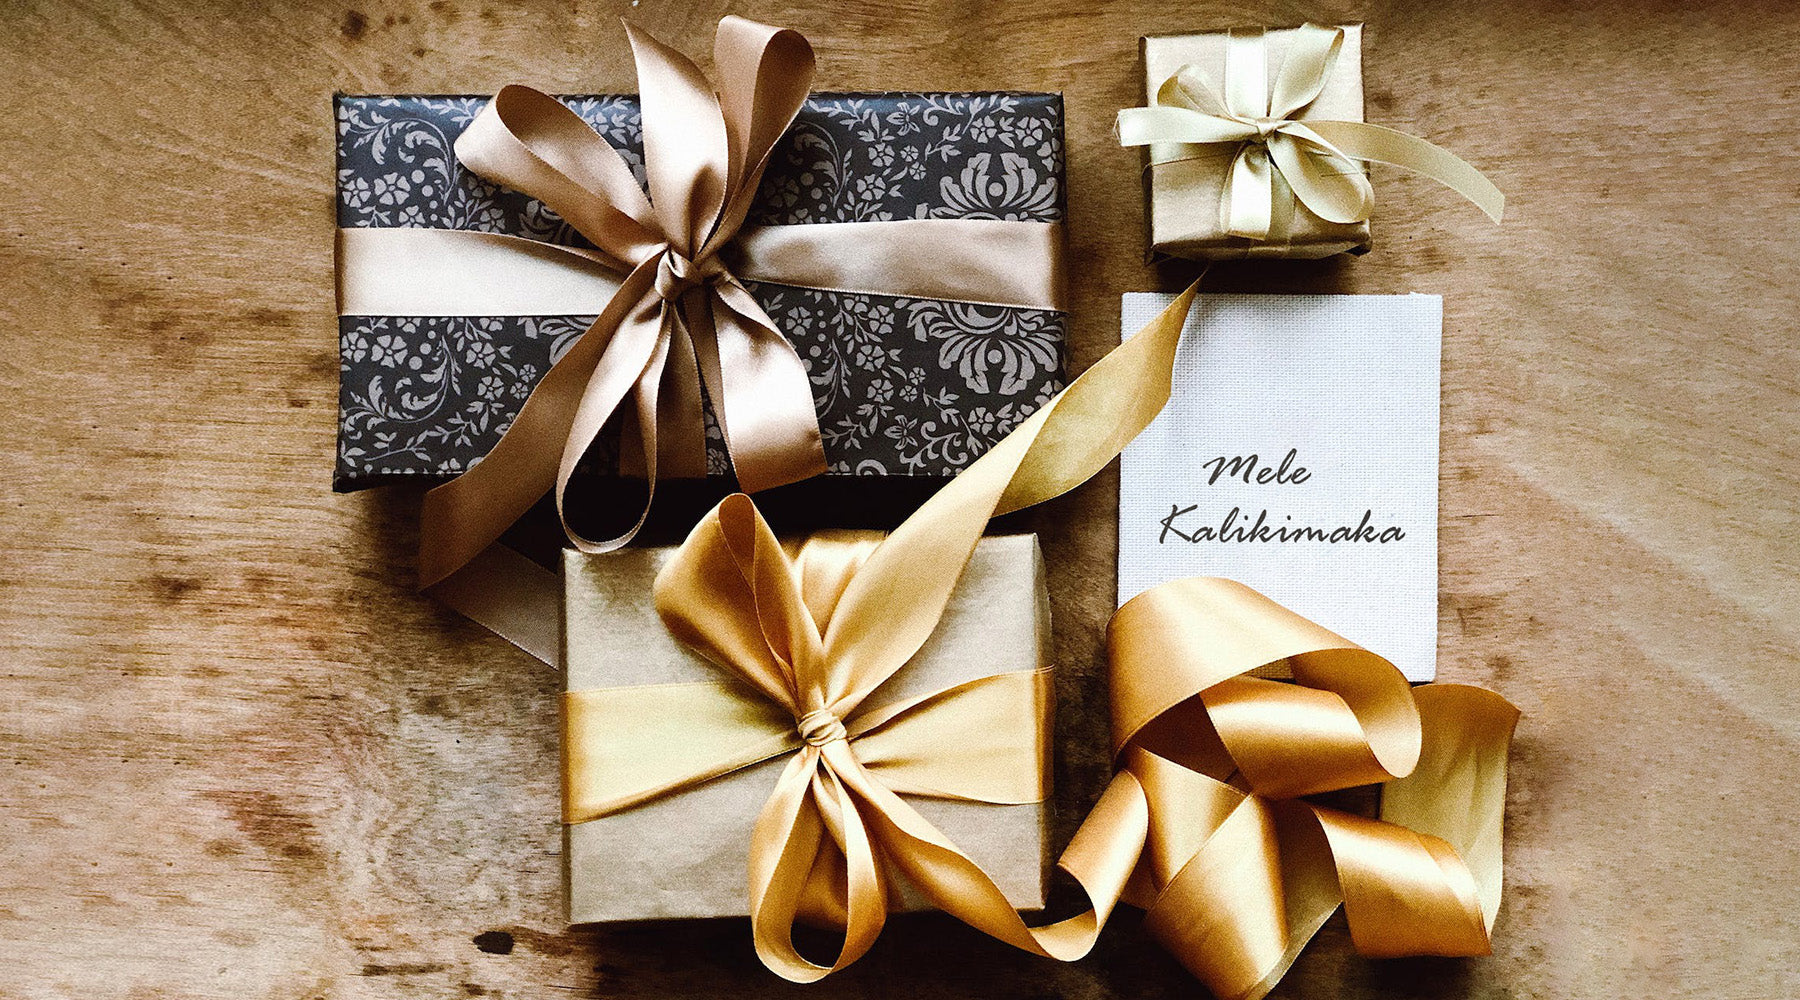 Elegant verpackte Geschenkboxen und eine Karte mit Mele Kalikimaka